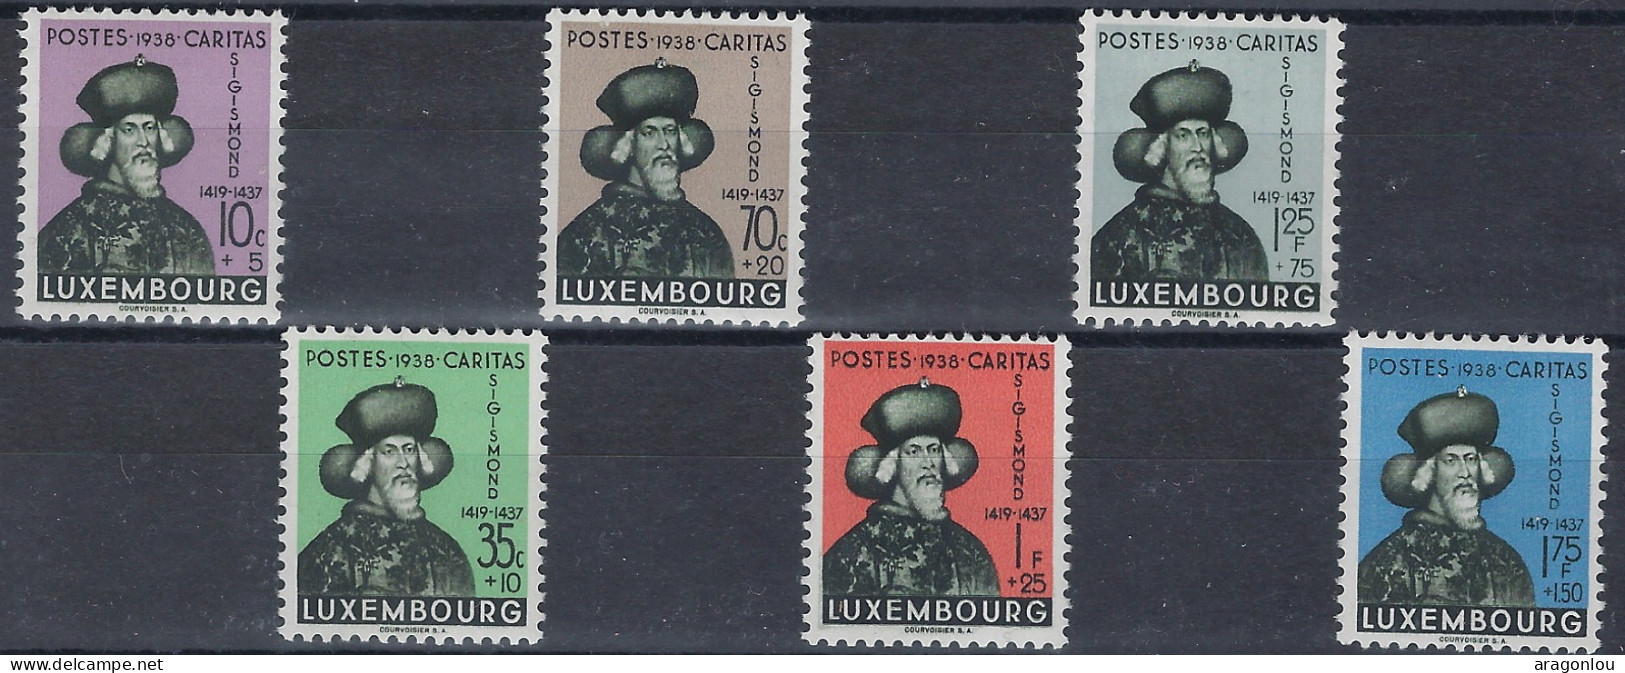 Luxembourg - Luxemburg - Timbres - Sigismund  1938  Série  * - Gebraucht